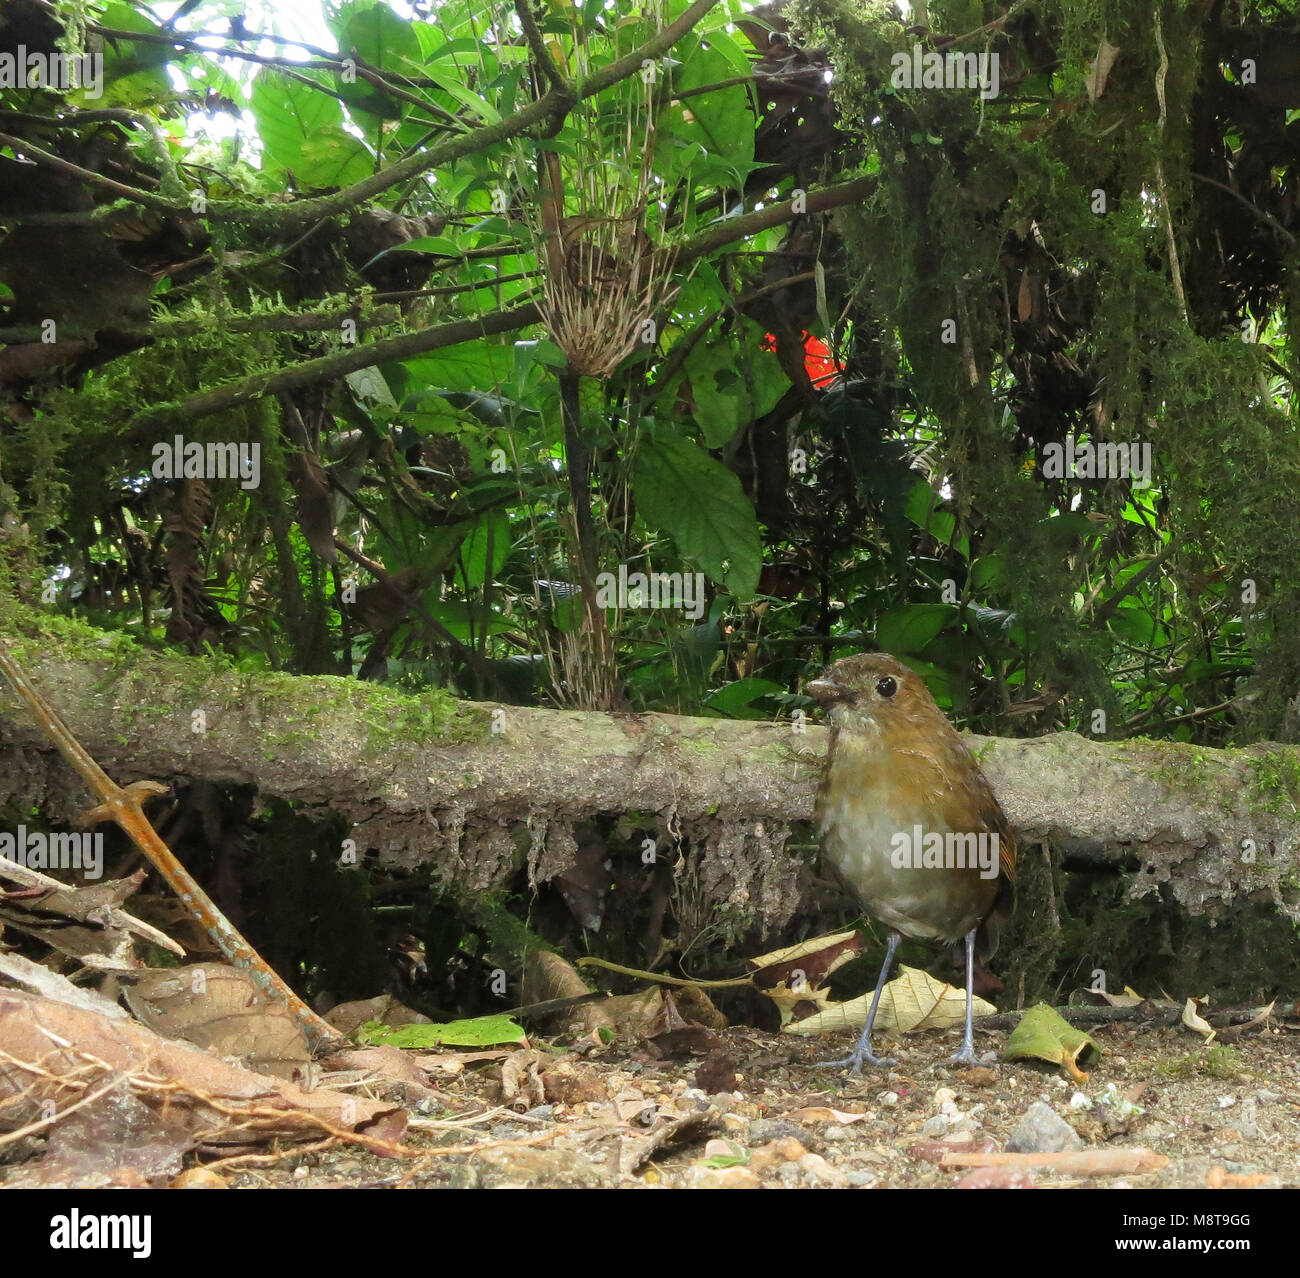 Caldasmierpitta staand op bosbodem; marrone-Antpitta nastrati in piedi sul suolo della foresta Foto Stock